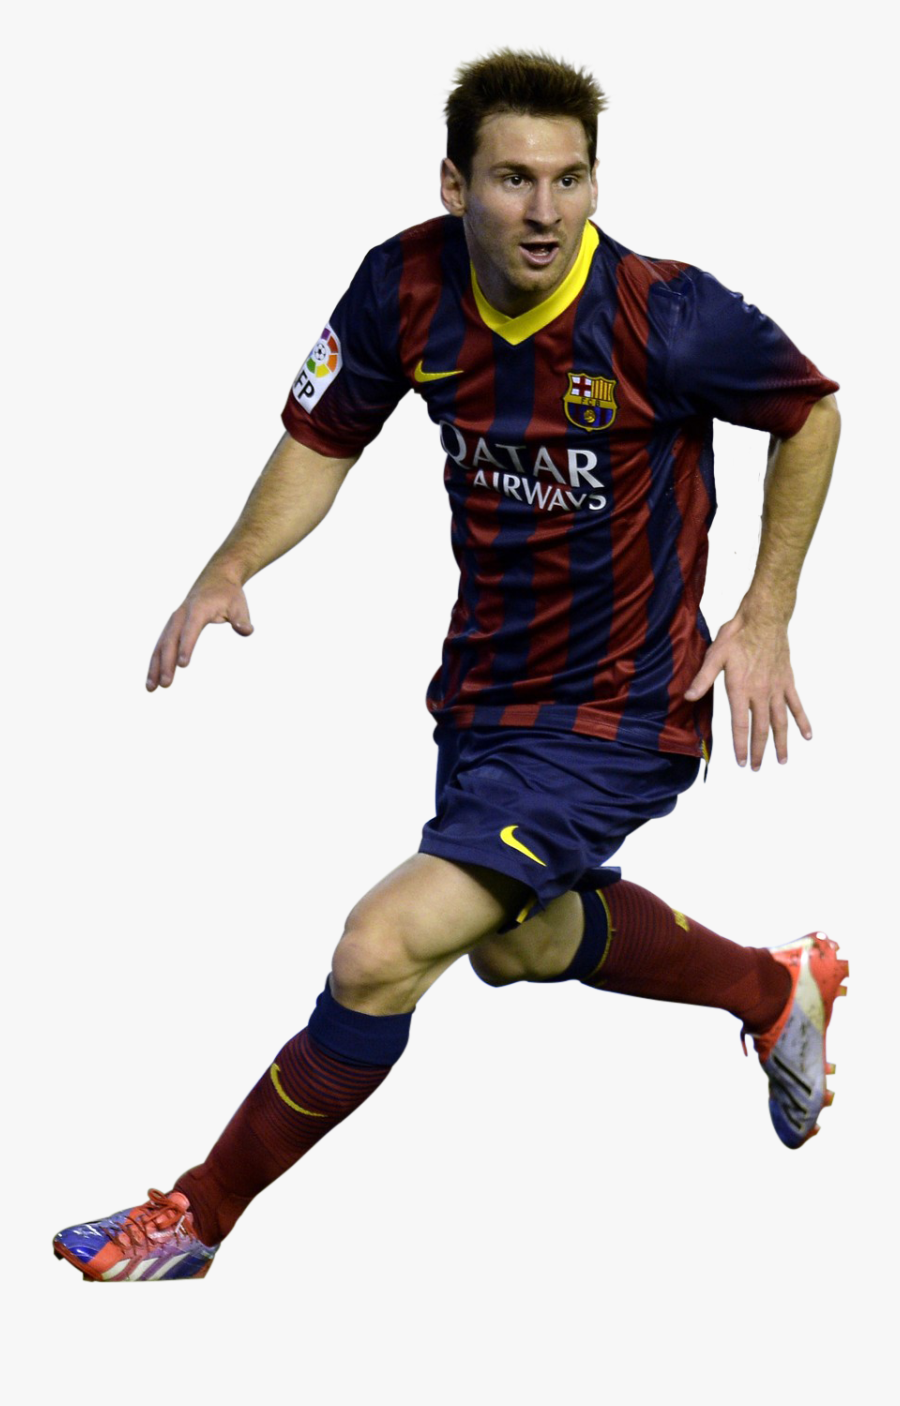 Sports Clipart Transparent Background - Lionel Messi Transparent Background, Transparent Clipart